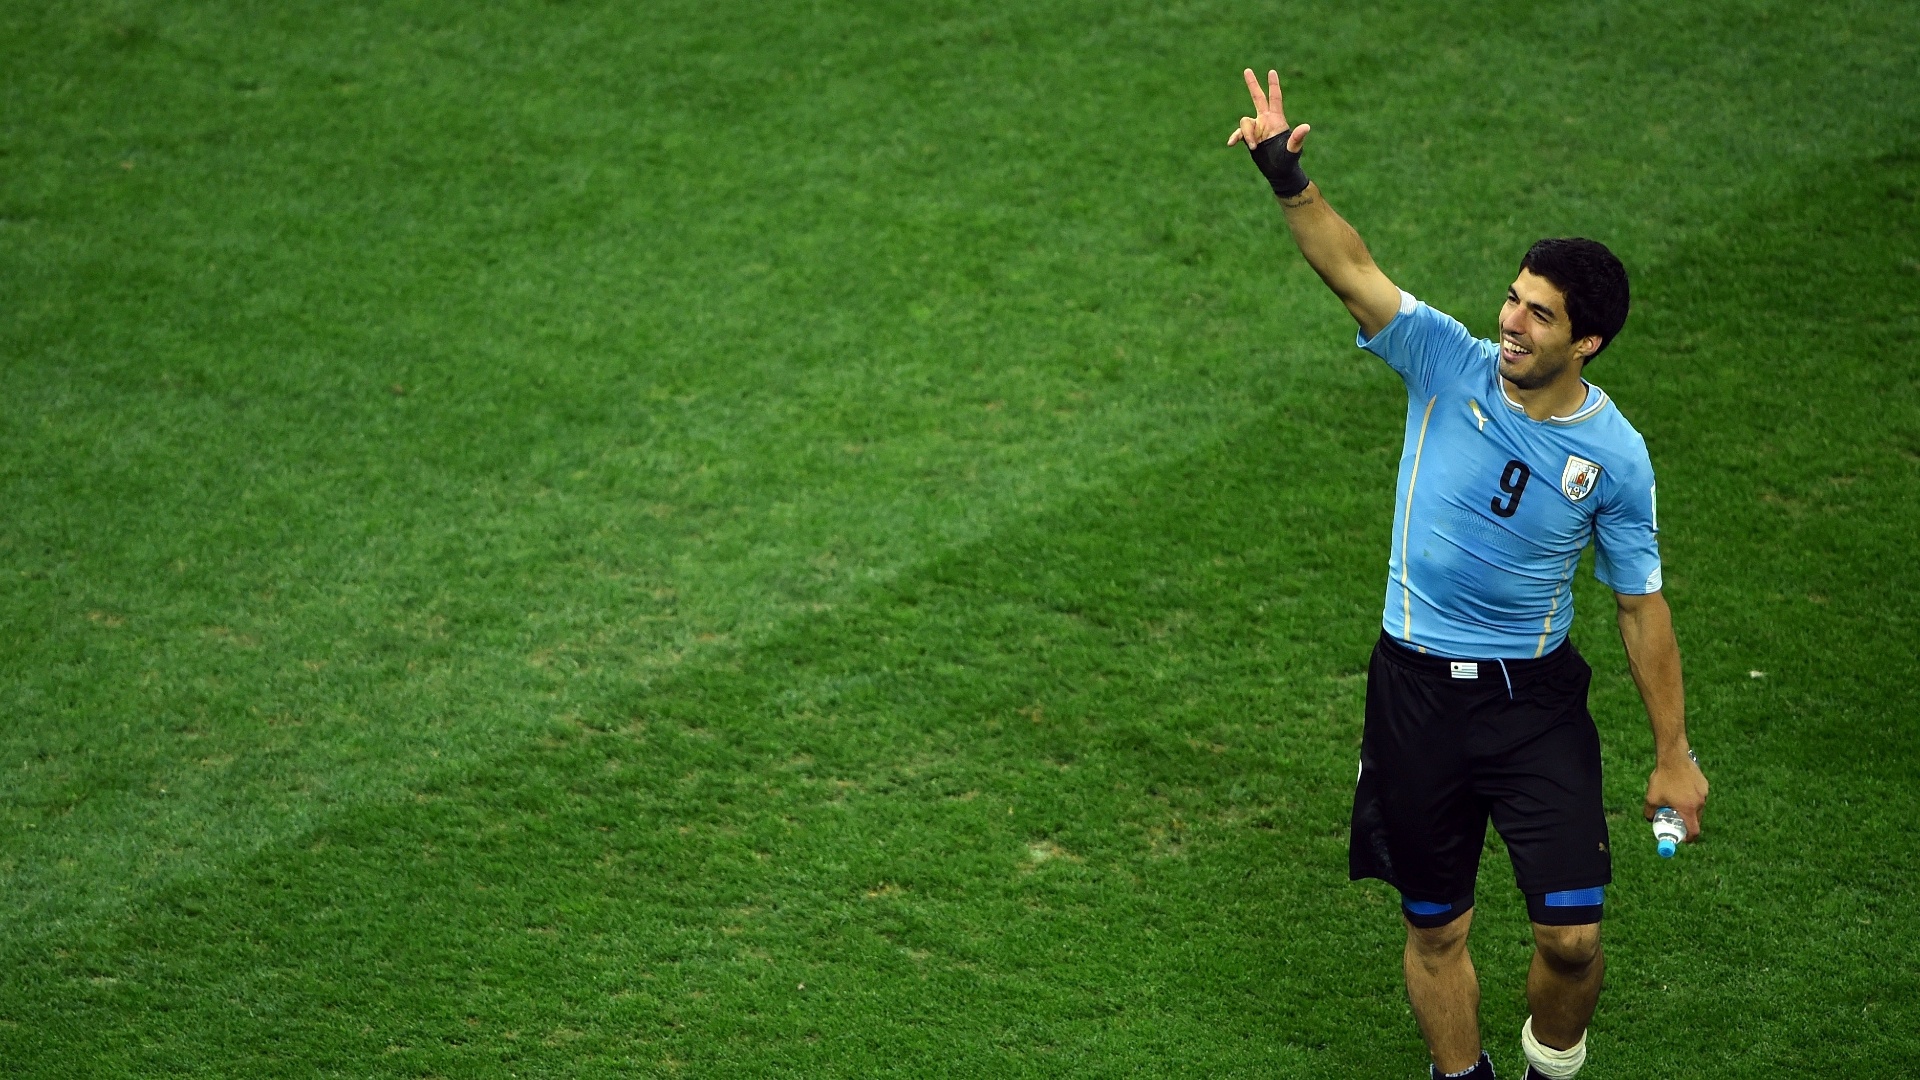 19.jun.2014 - Luis Suárez comemora no Itaquerão após a vitória uruguaia sobre a Inglaterra por 2 a 1